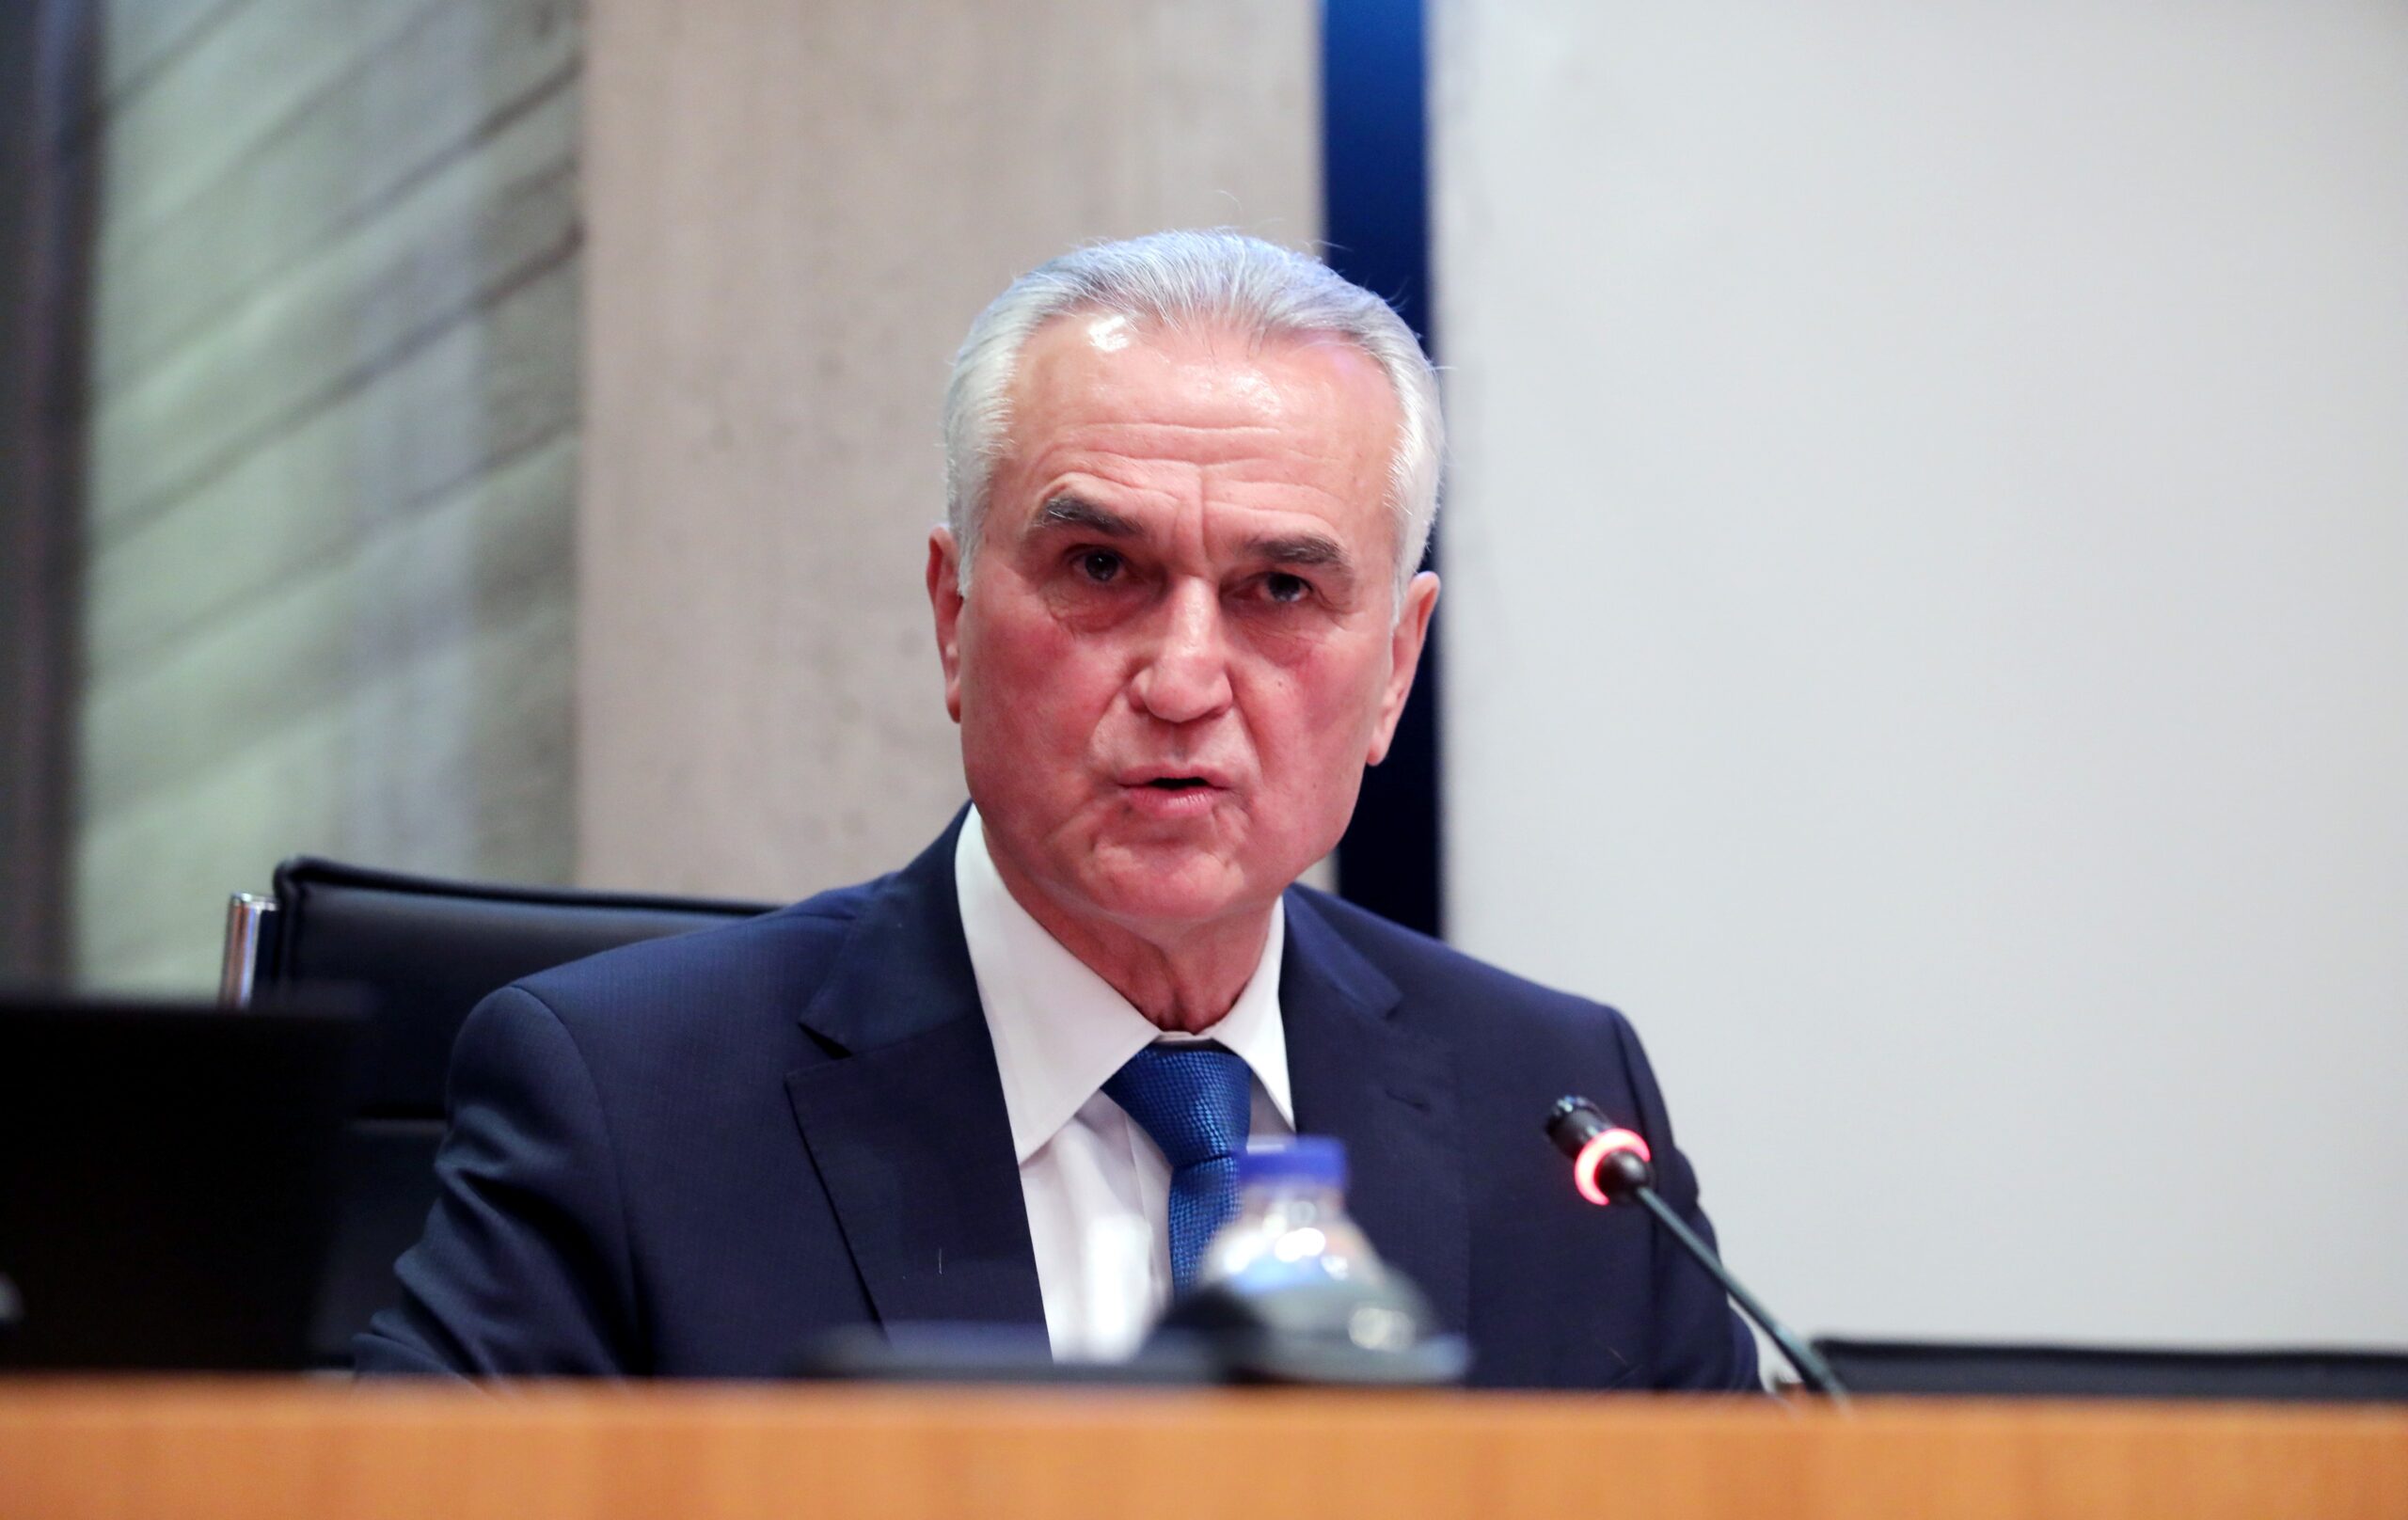 Σάββας Αναστασιάδης: “Στηρίζουμε τον ελληνισμό της Πόλης” (ΒΙΝΤΕΟ)